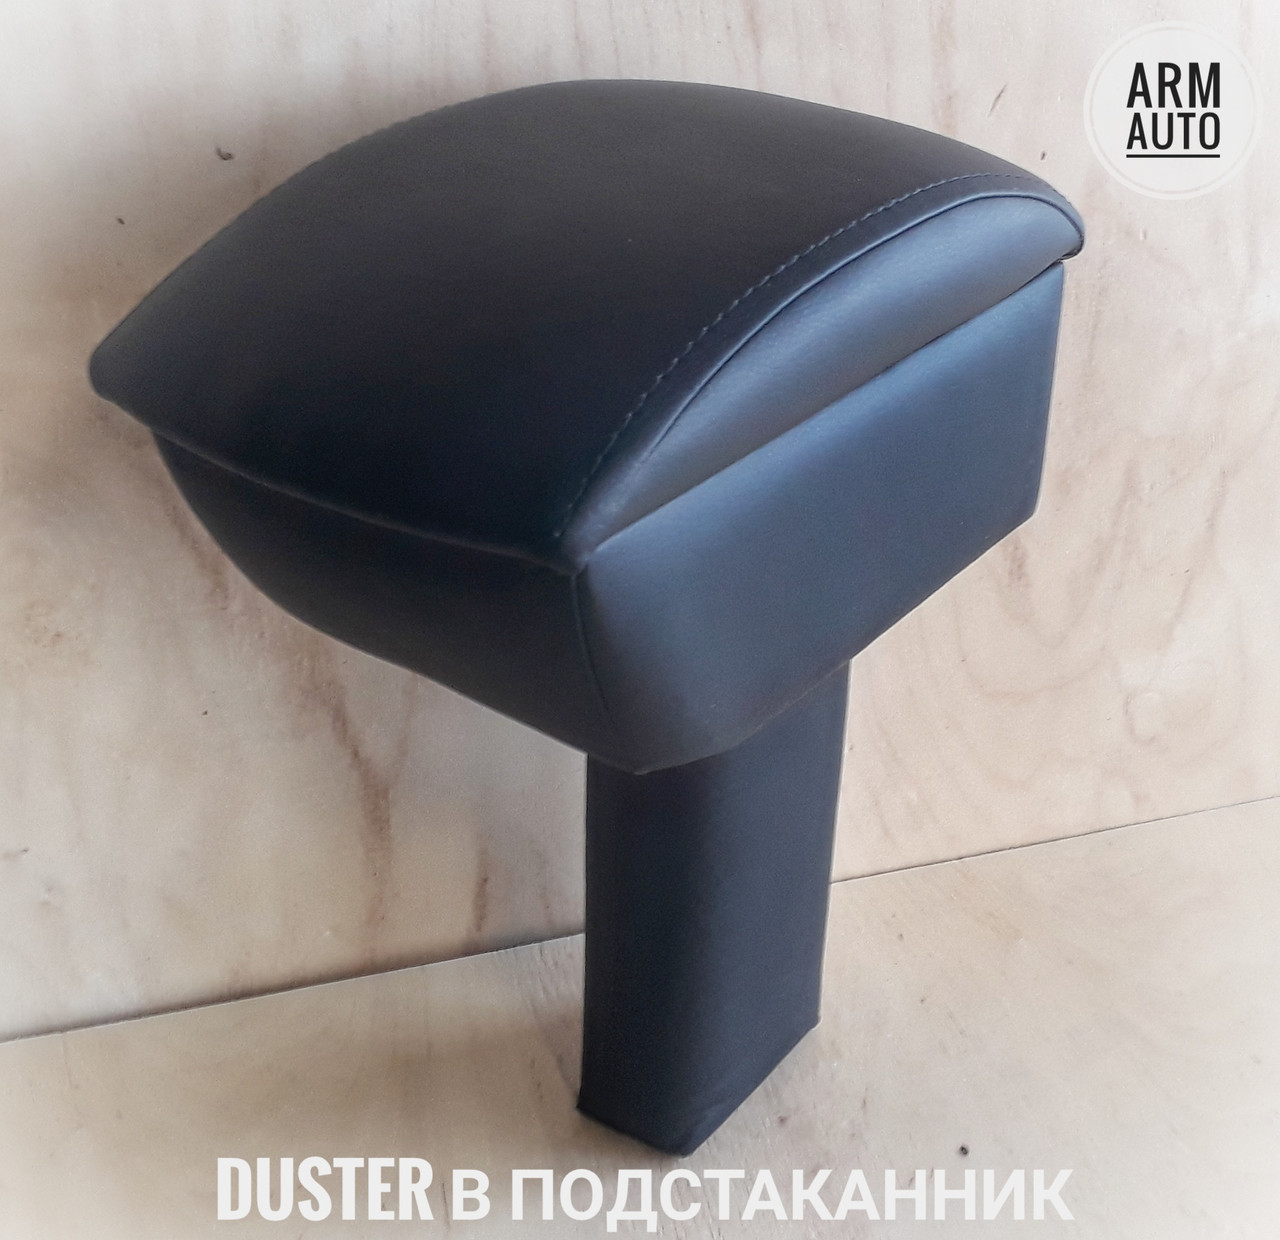 Подлокотник в подстаканник ArmAuto для NISSAN TERRANO | Рено Дастер | Renault Duster